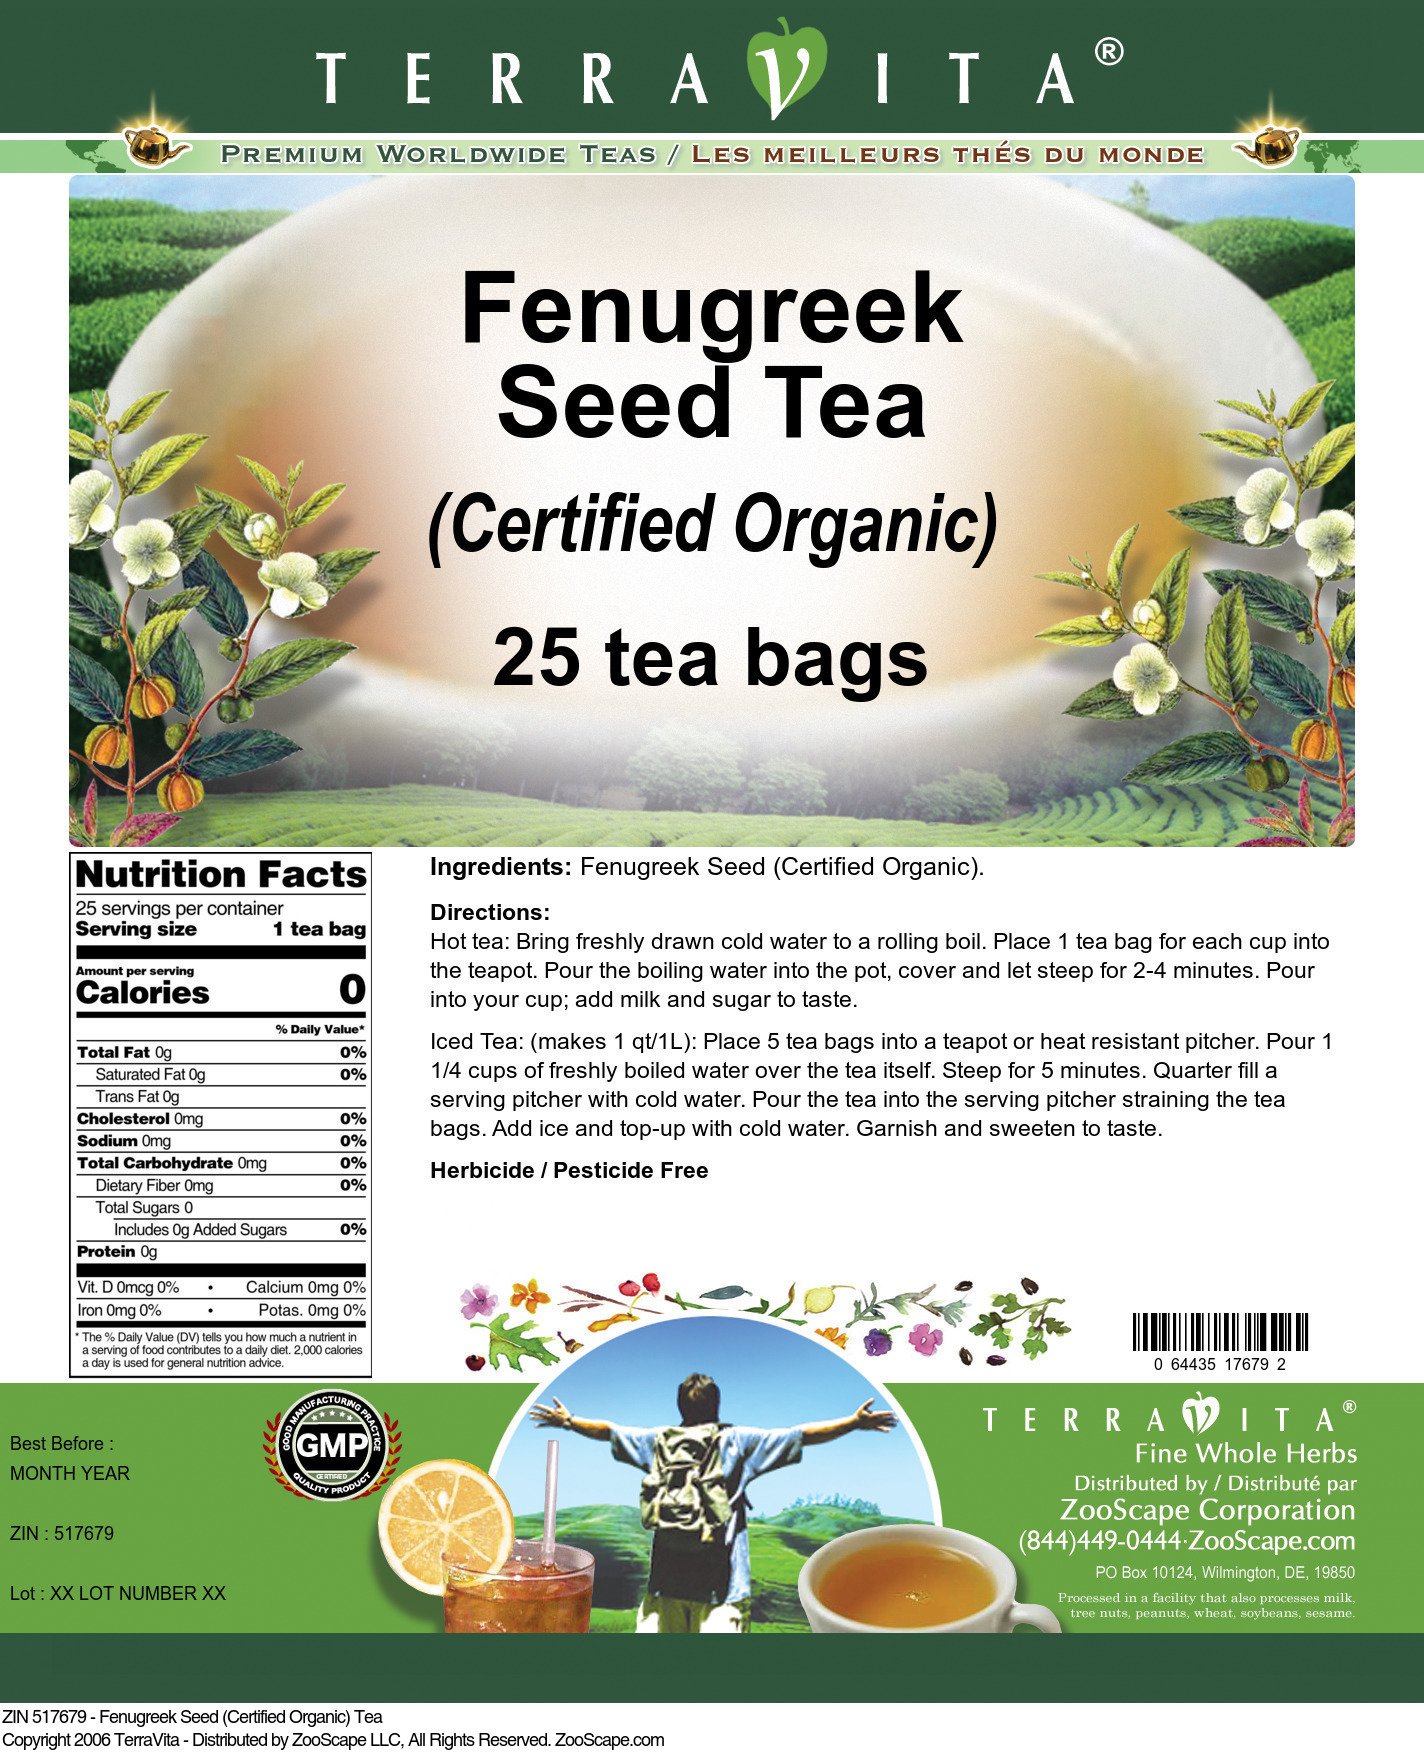 Fenugreek Seed (Certified Organic) Tea - Label